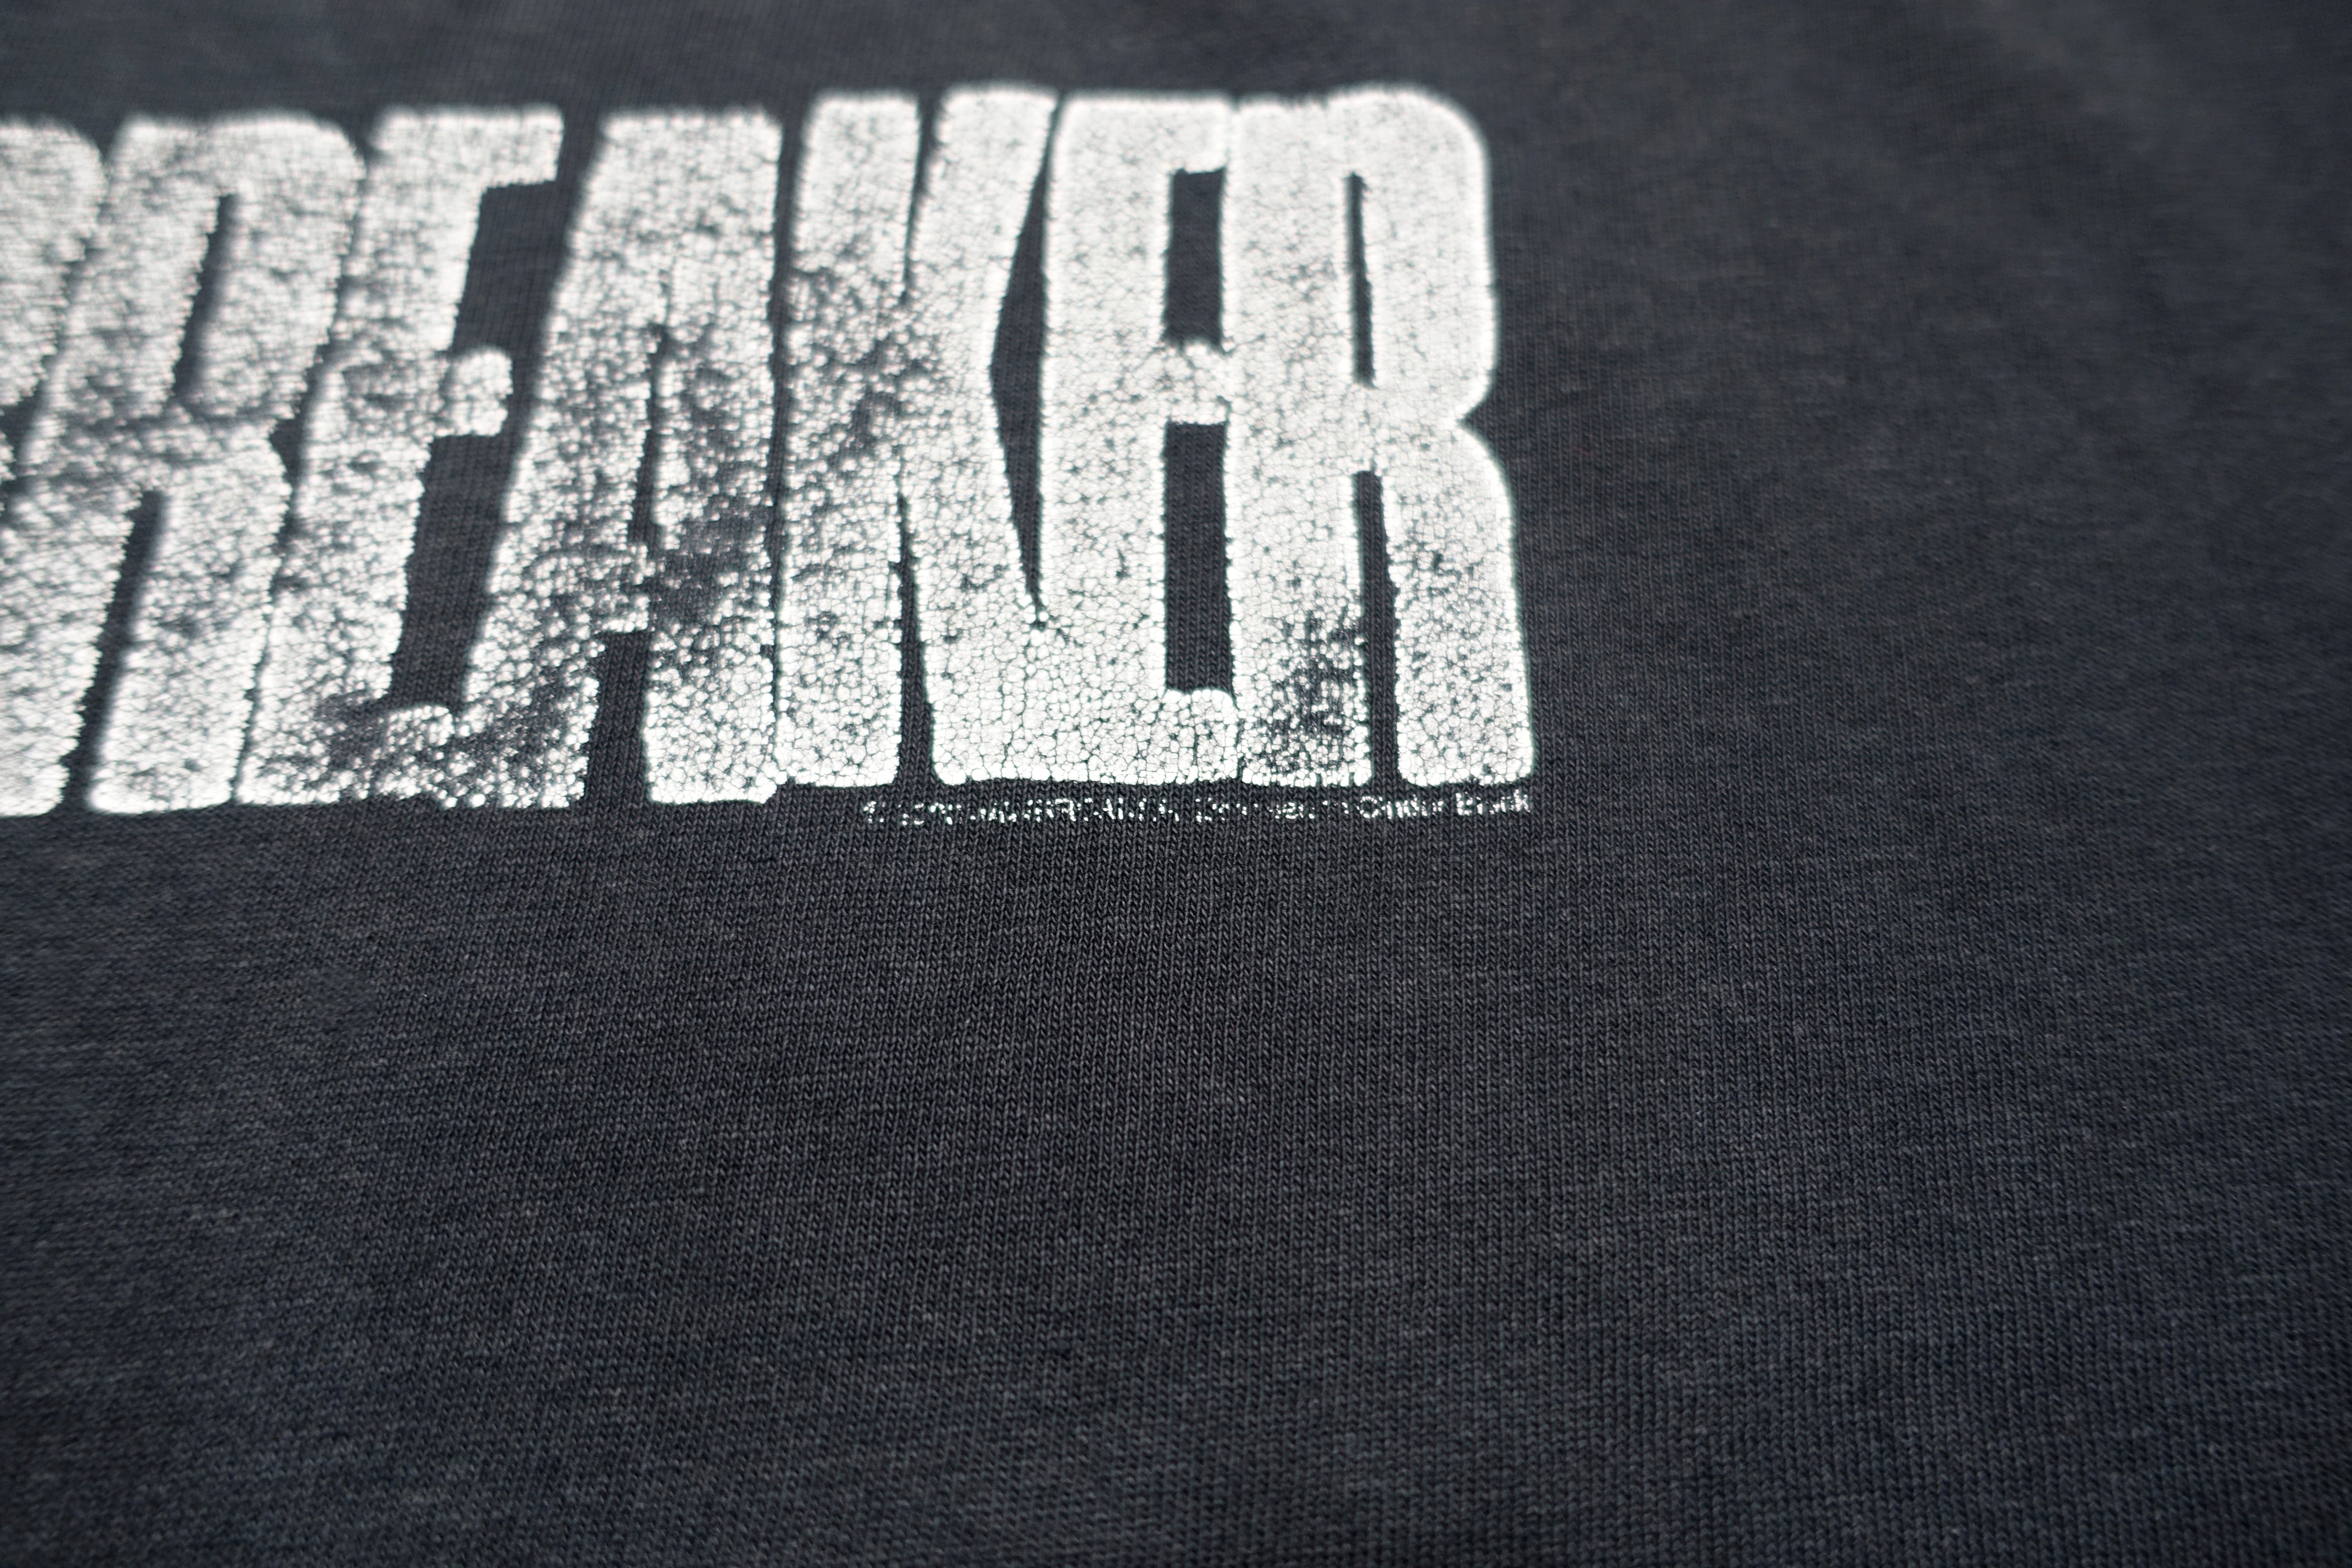 Jawbreaker - Silver Logo 2004 Shirt Size Large